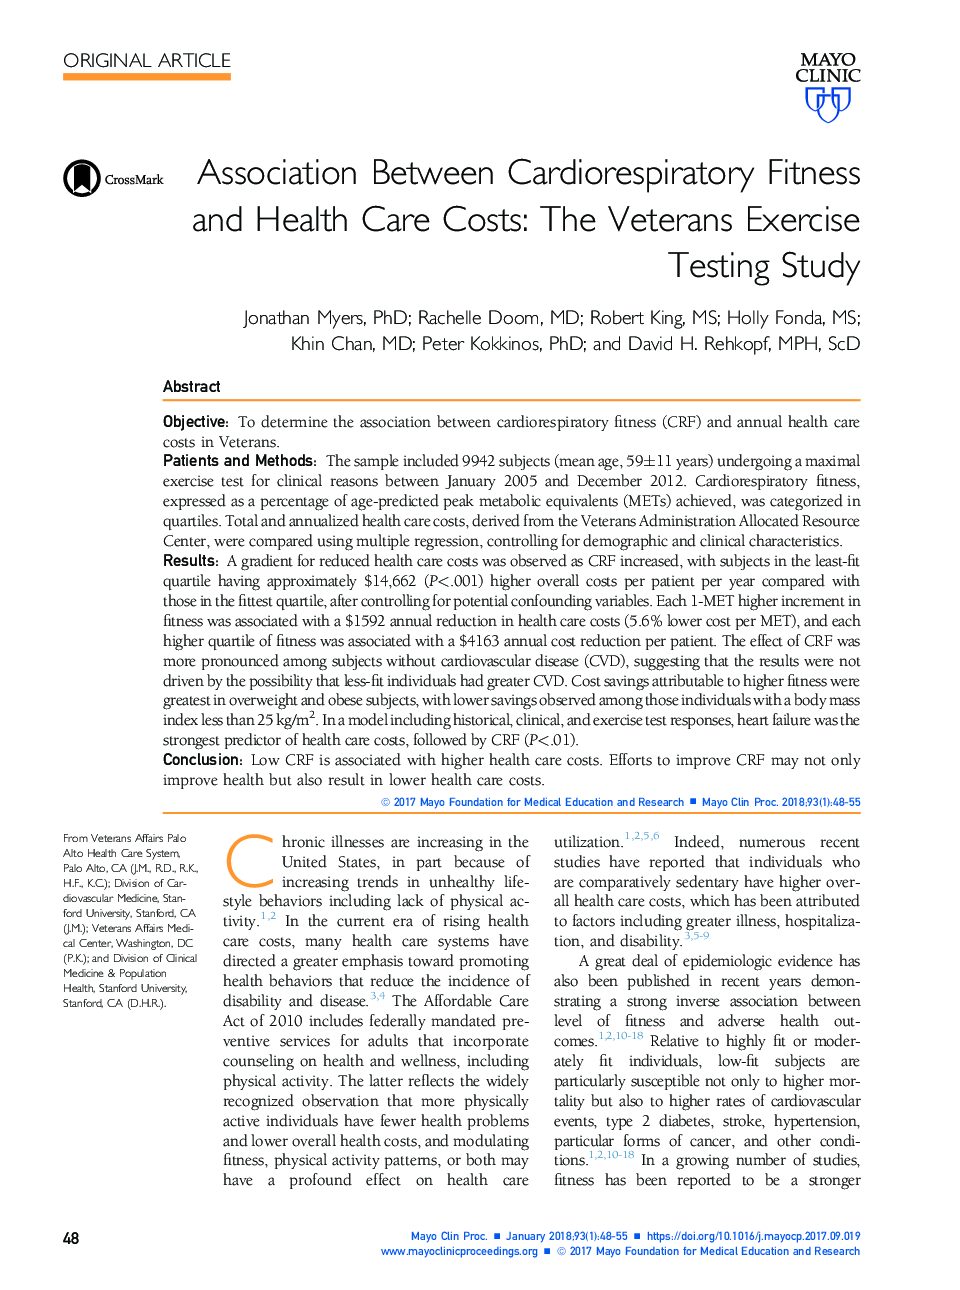 ارتباط بین سلامت قلب و تناسب اندام و هزینه های مراقبت های بهداشتی: آزمایش تست ورزش برای جانبازان 